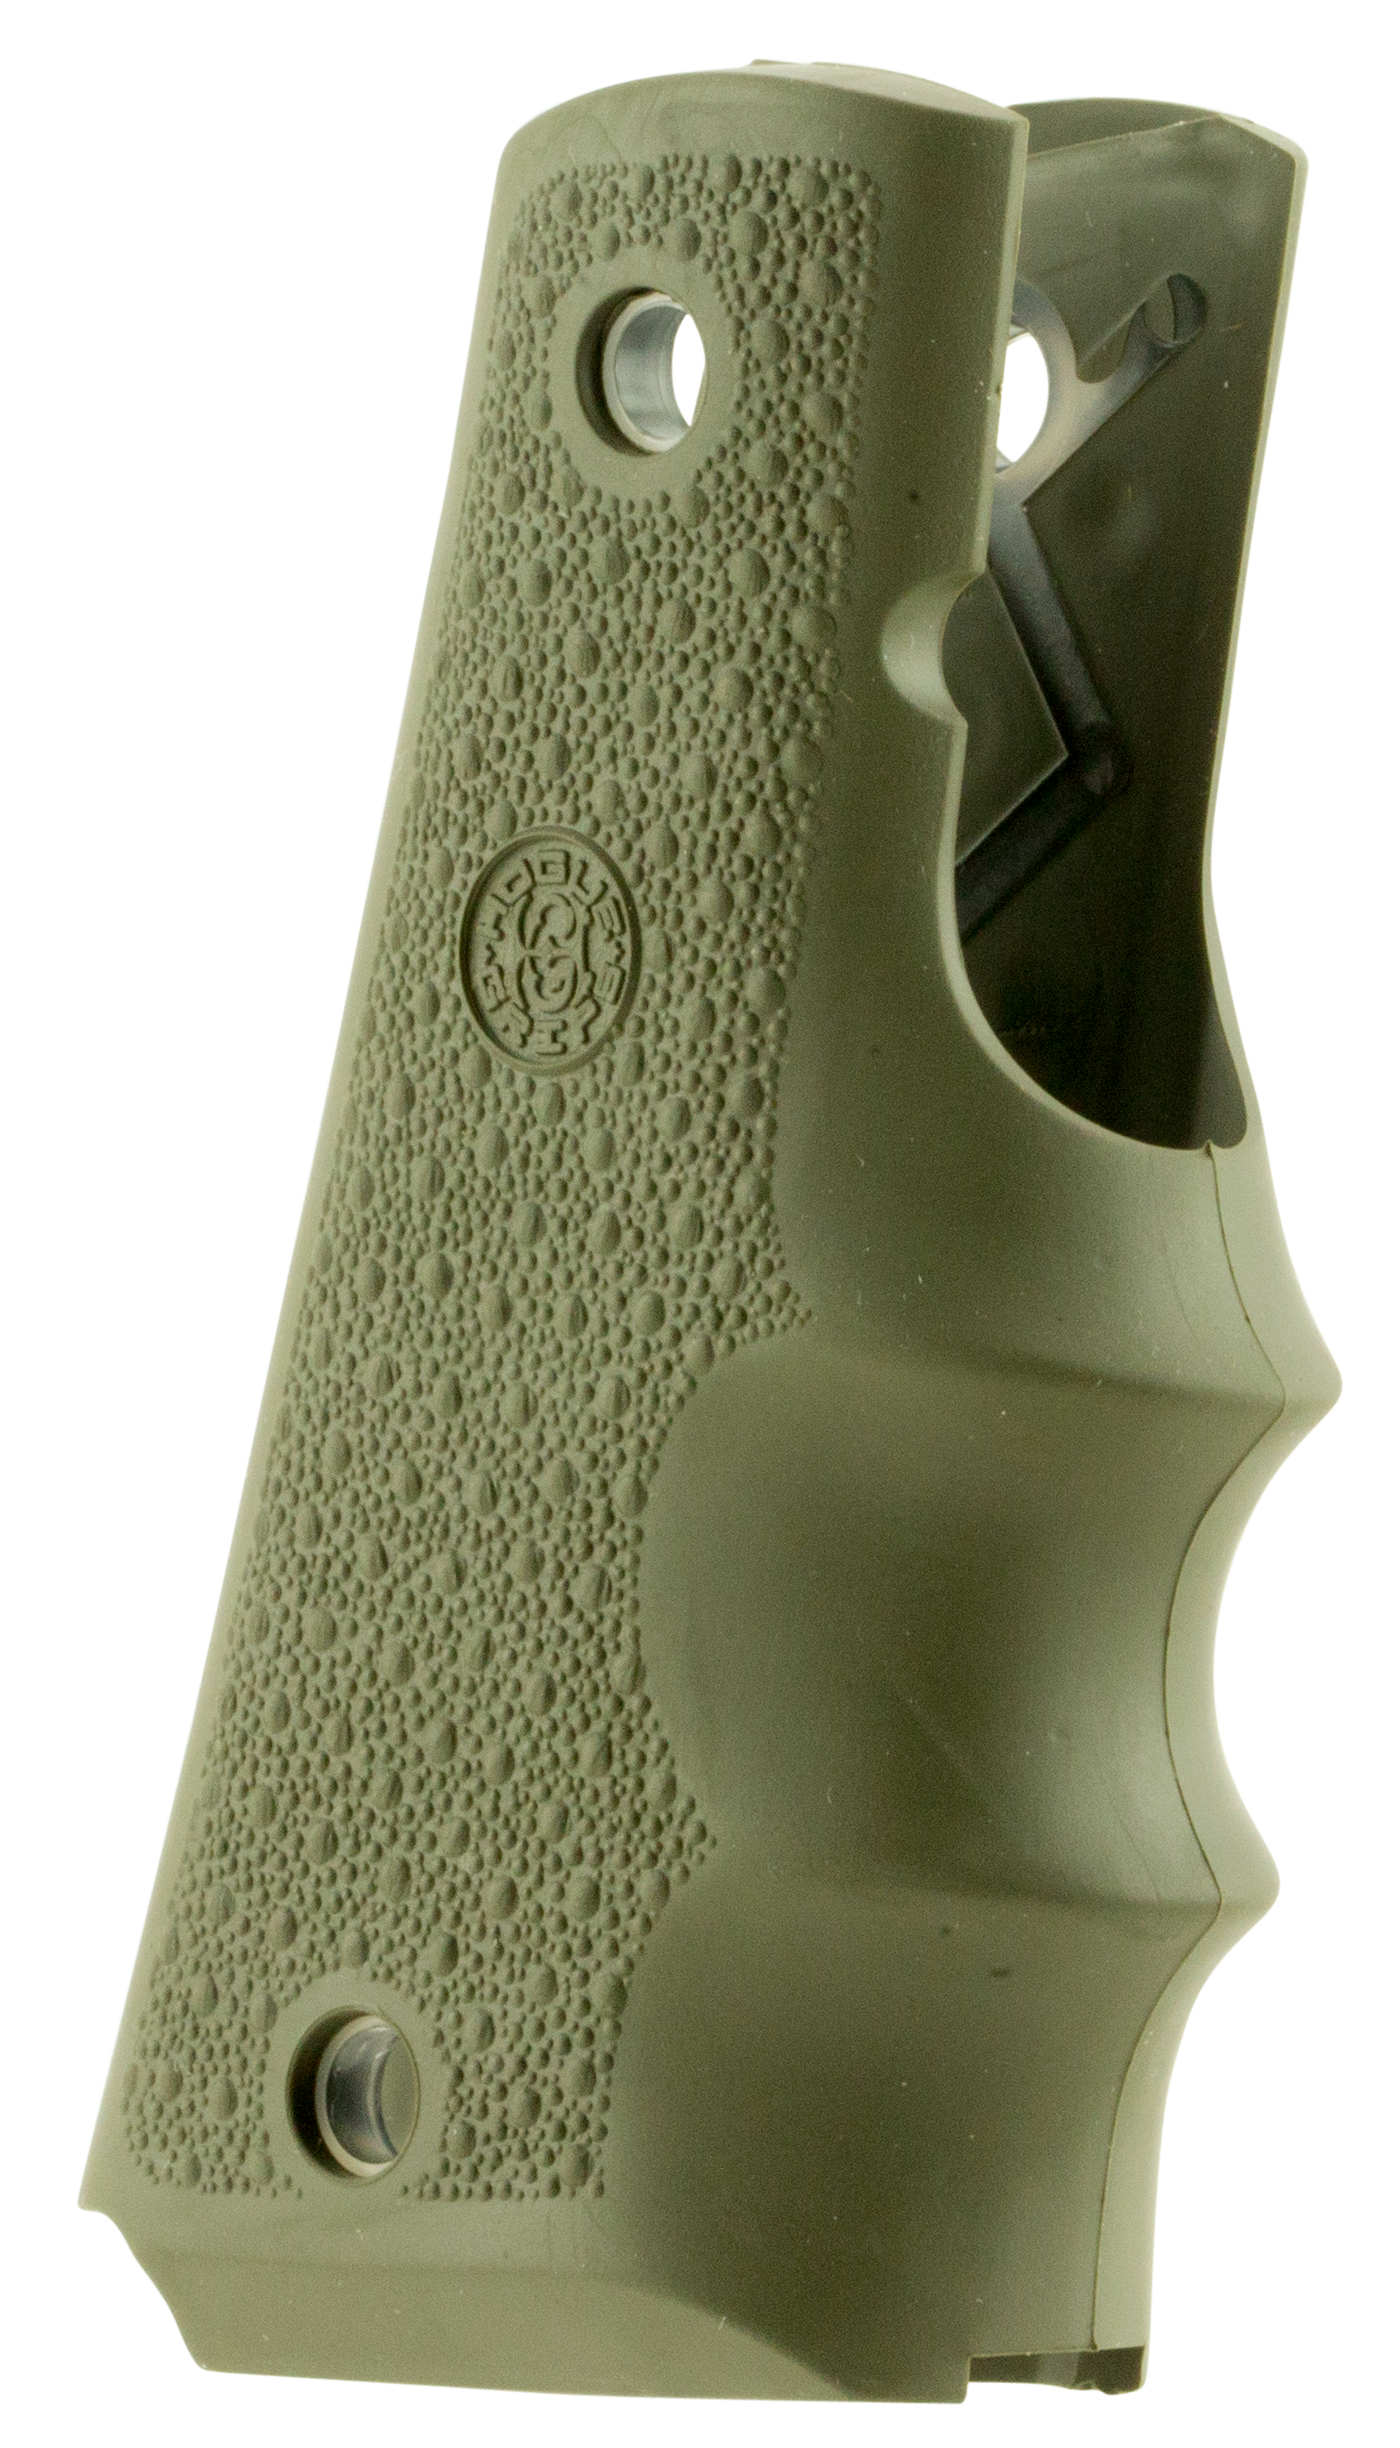 Hogue Grips Colt Govt Model - W/finger Grooves Od Green